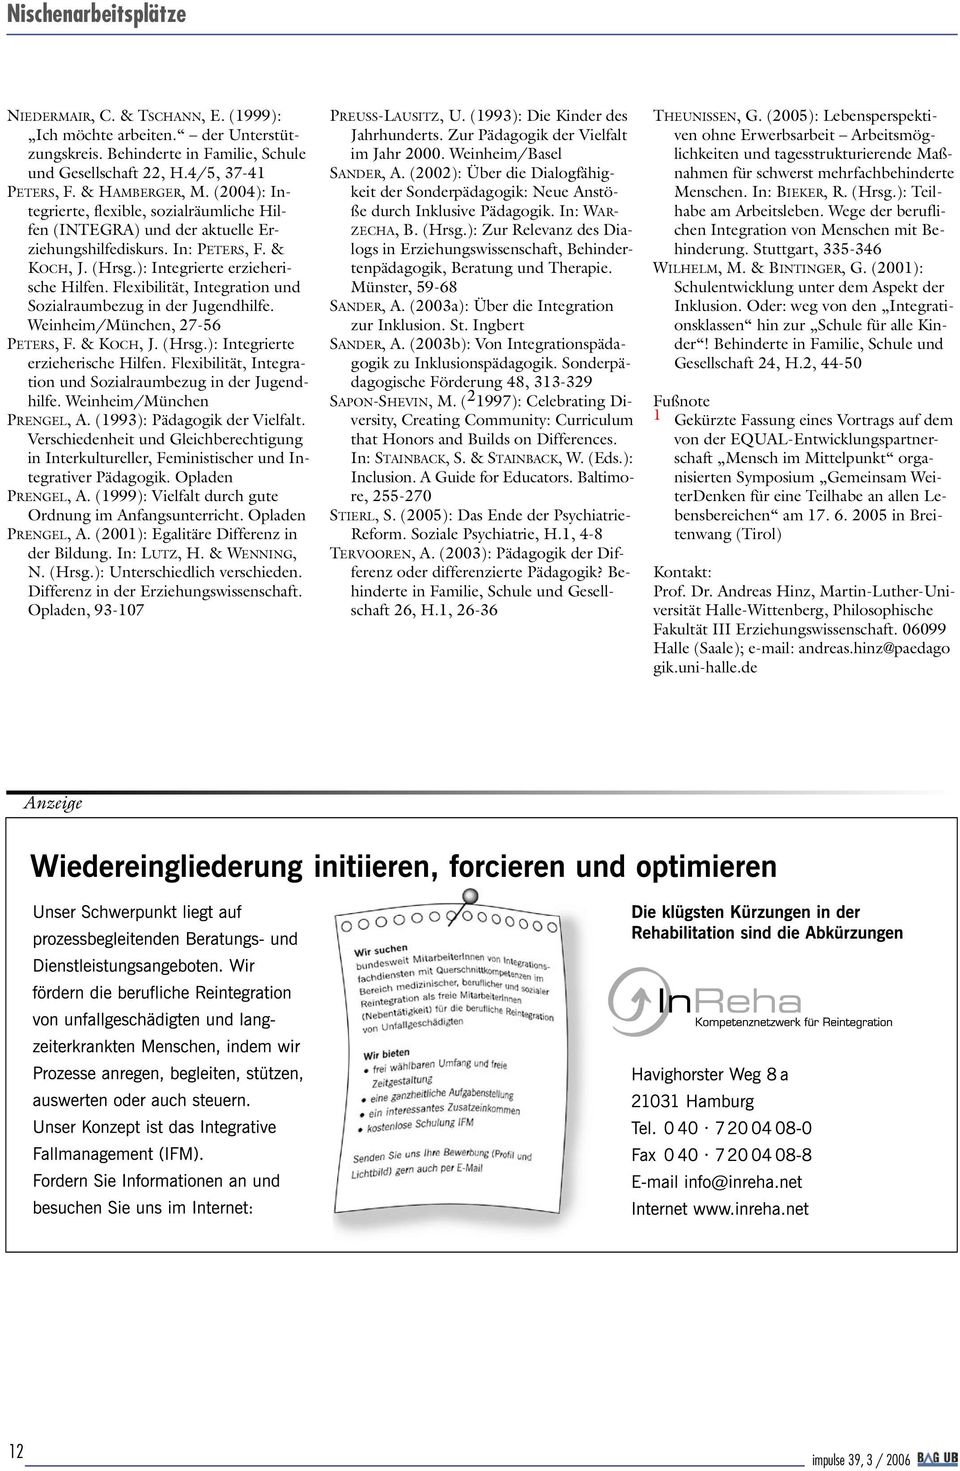 Flexibilität, Integration und Sozialraumbezug in der Jugendhilfe. Weinheim/München, 27-56 PETERS, F. & KOCH, J. (Hrsg.): Integrierte erzieherische Hilfen.